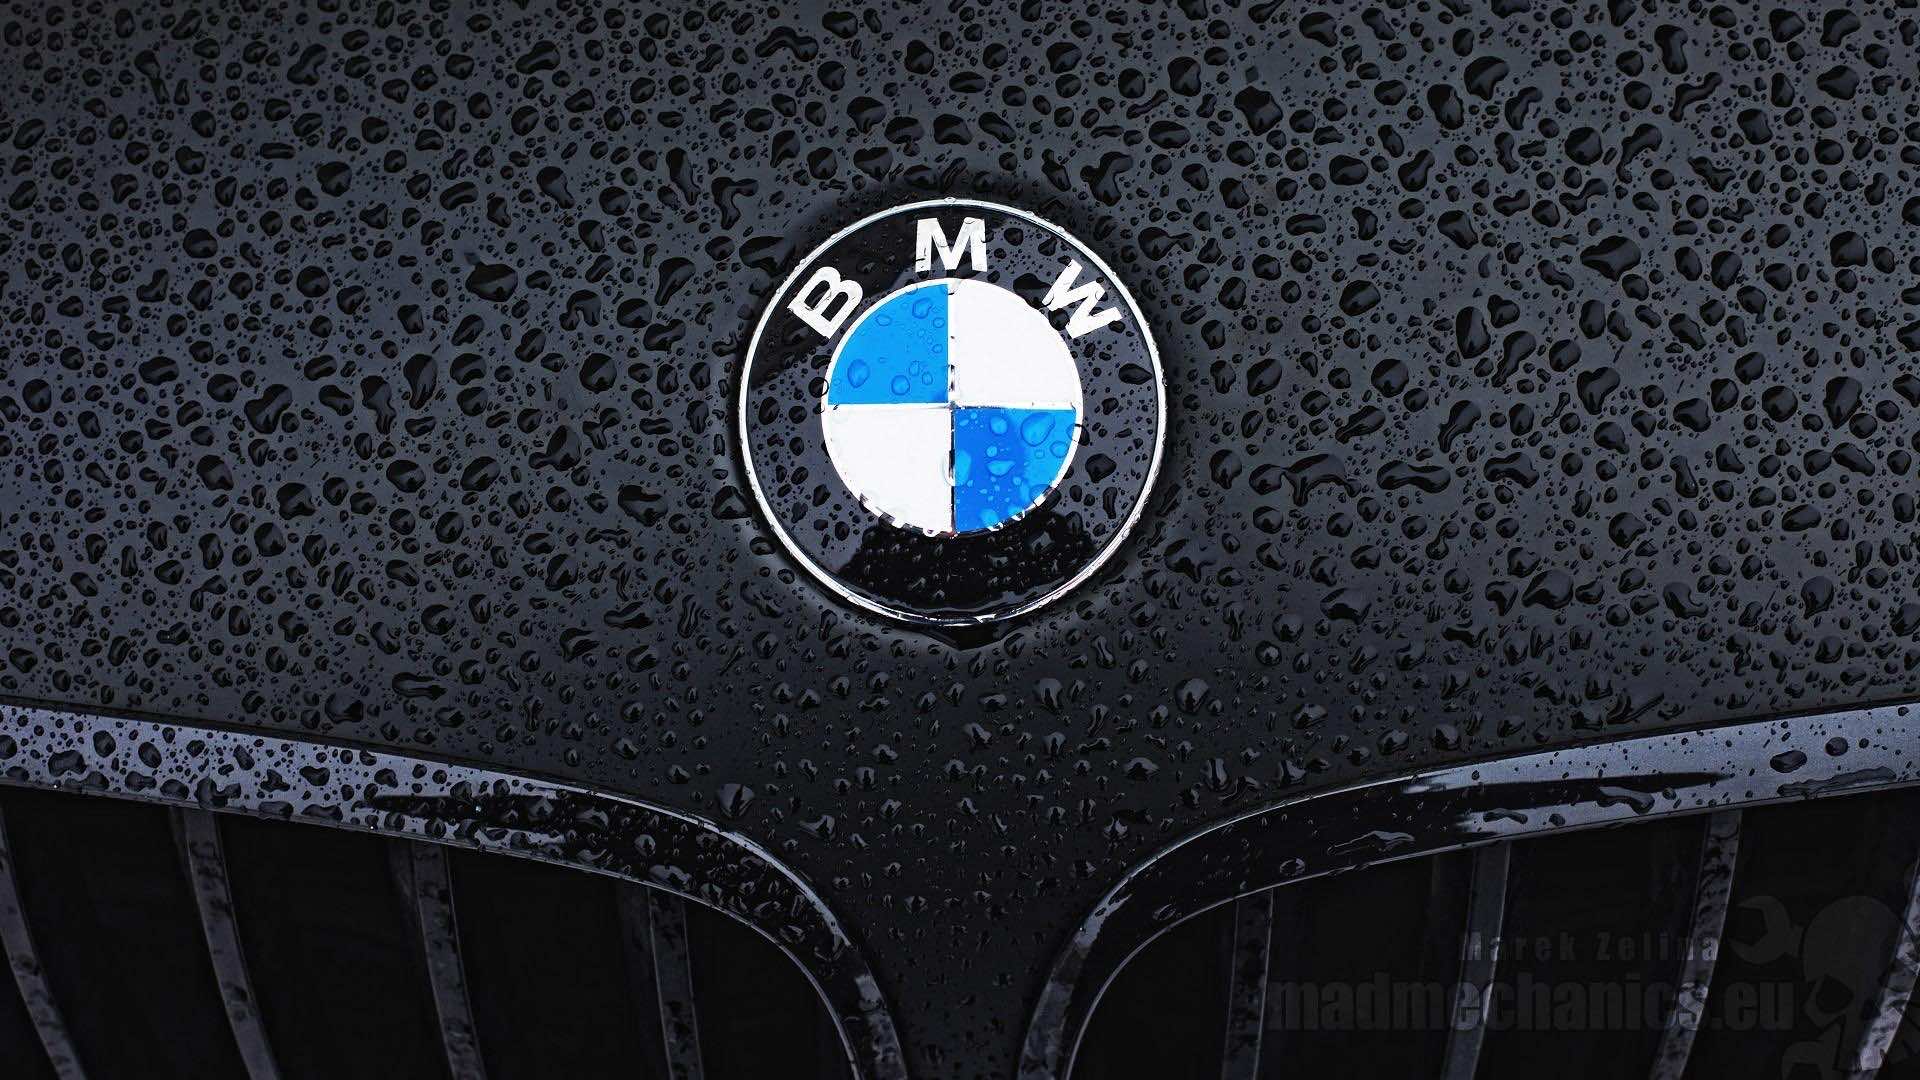 Bmw logo wallpaper download